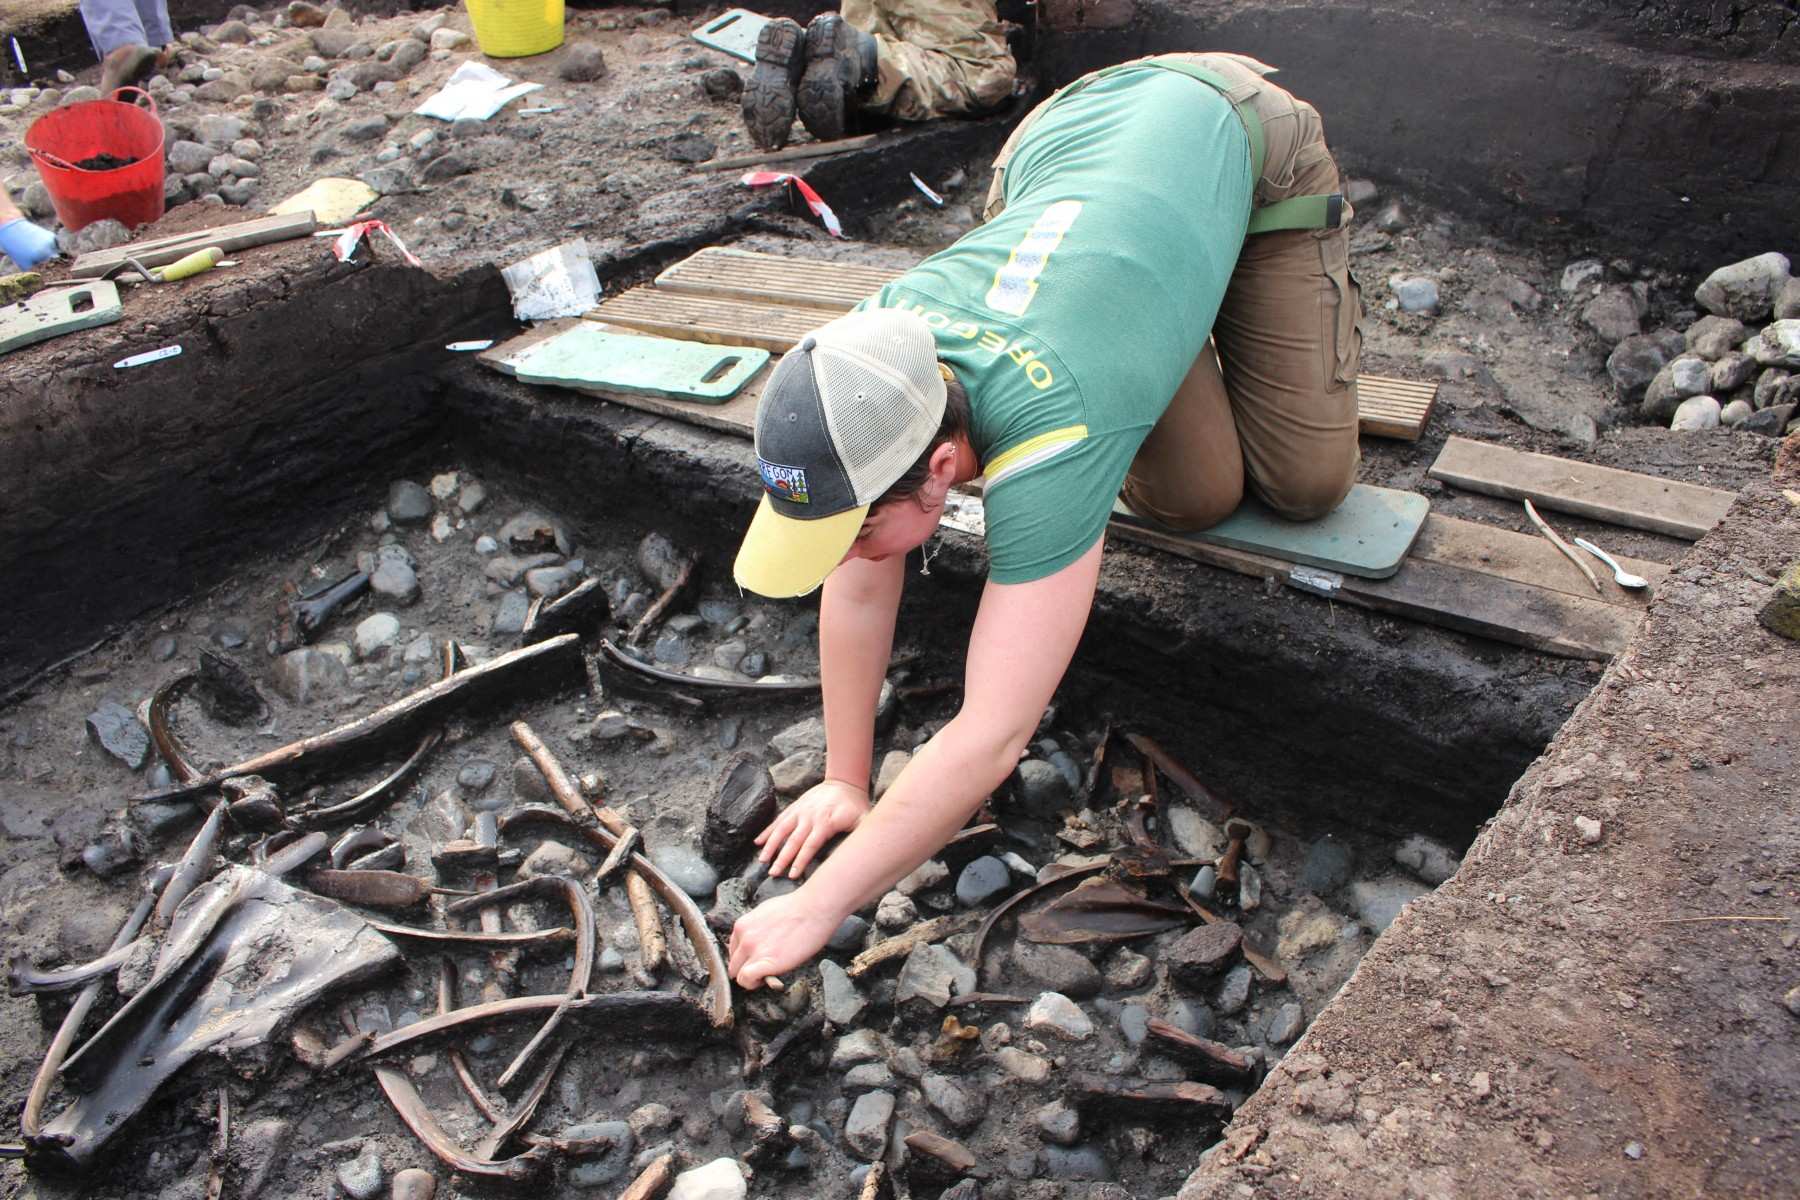 Állati csontok, szerszámok és fegyverek, valamint a famegmunkálás ritka bizonyítékai kerültek elő a Scarborough melletti ásatások során.